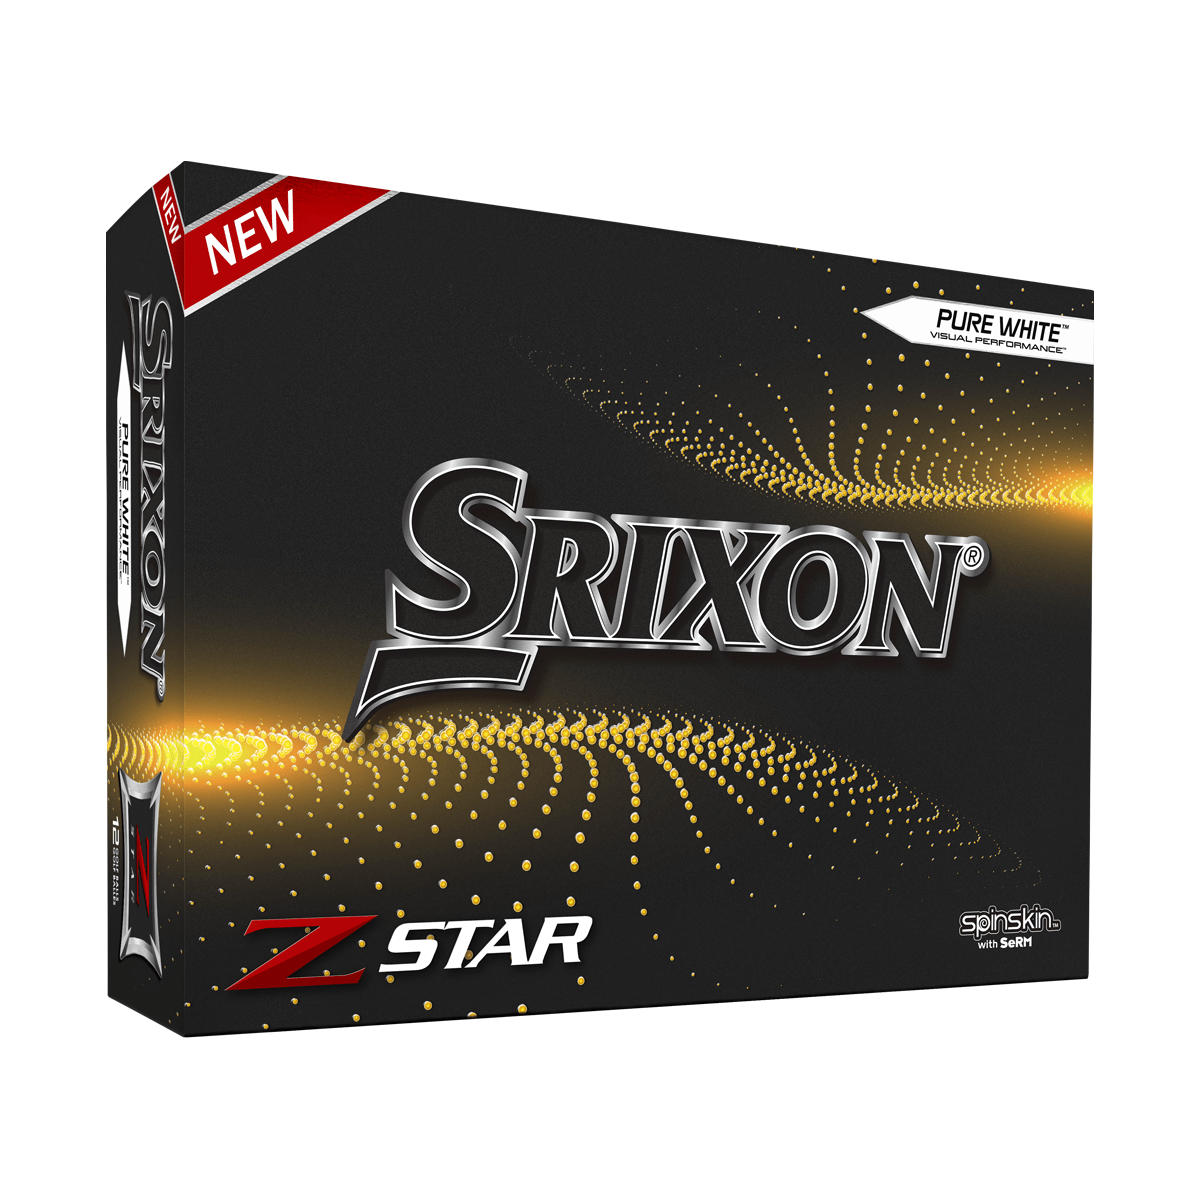 Brug Srixon Z-Star - 2021 til en forbedret oplevelse